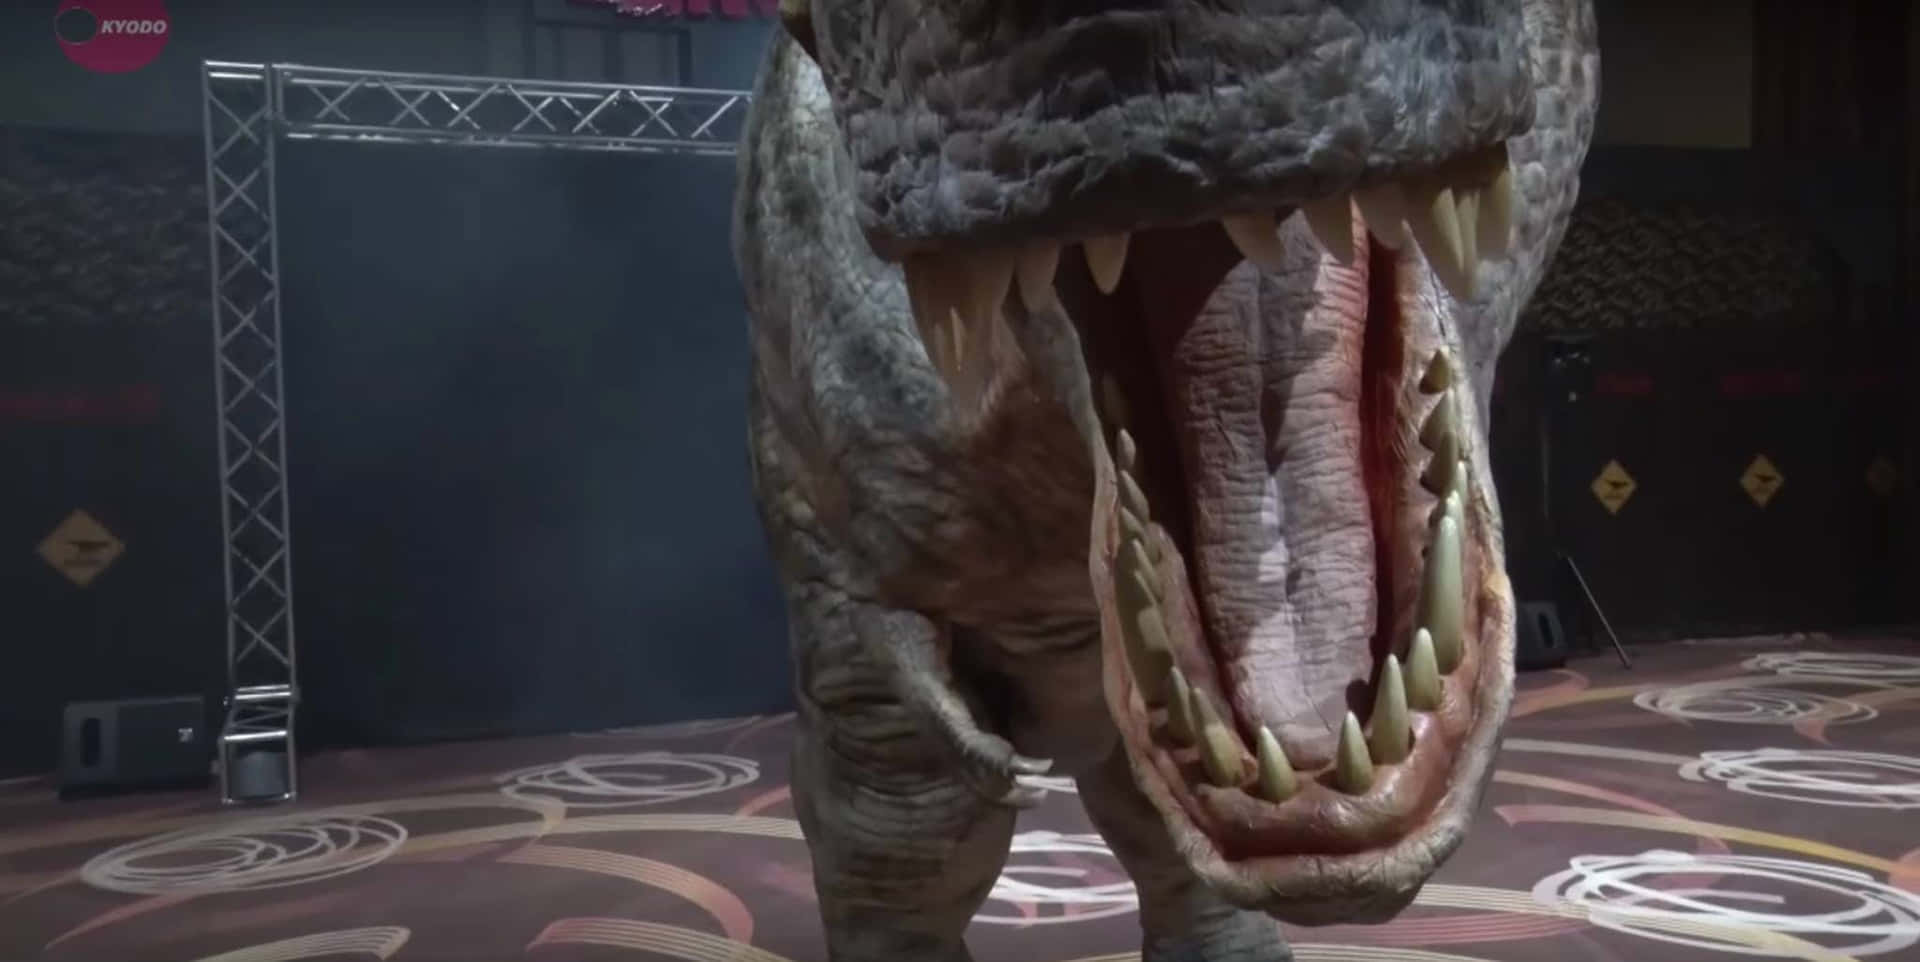 En t-rex med åben mund i et bibliotek